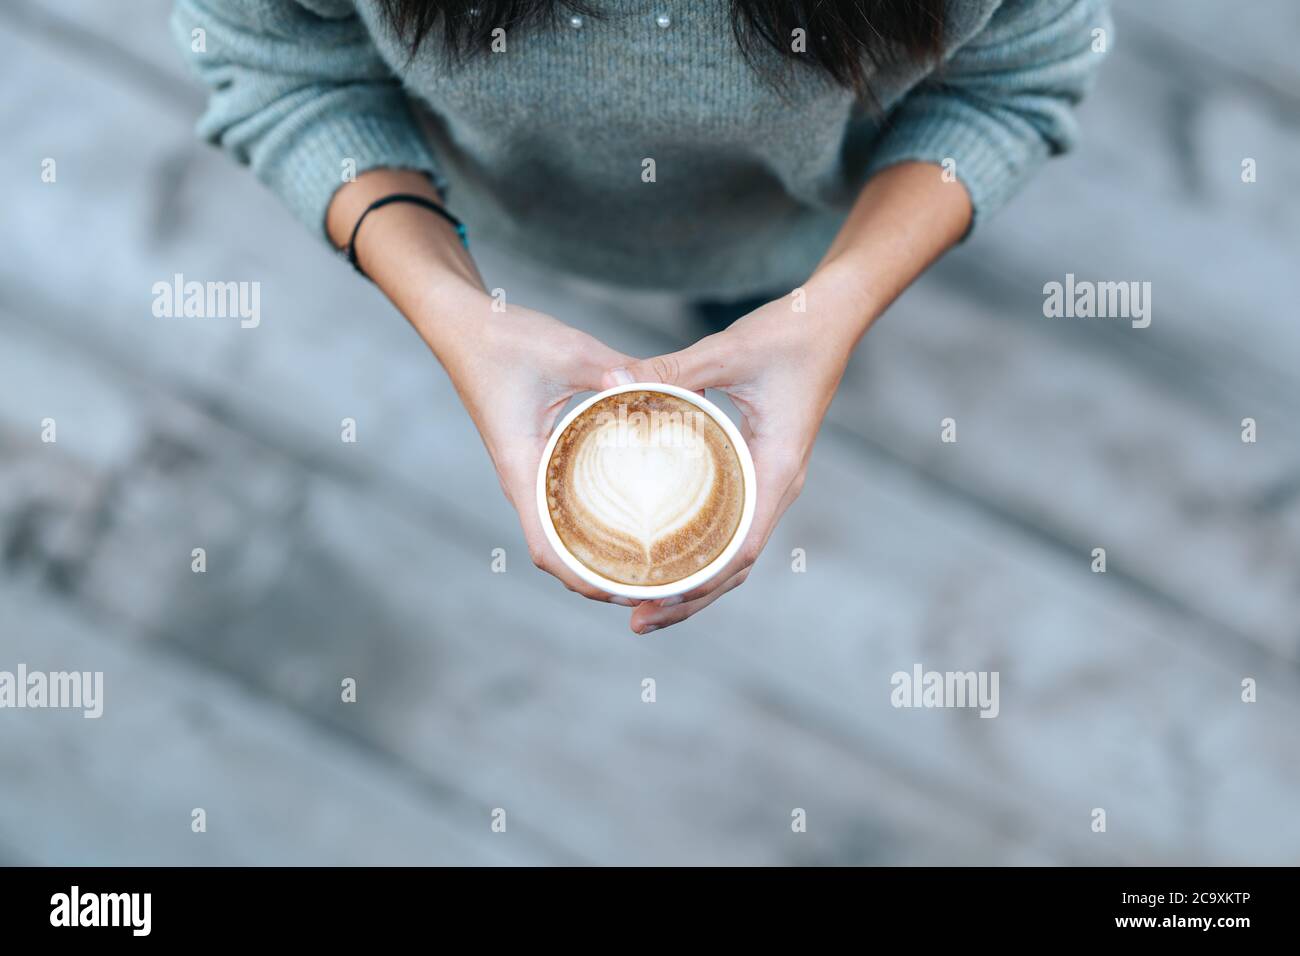 Giovane donna che tiene una tazza usa e getta con caffè a forma di cuore in un caffè. Foto di alta qualità Foto Stock